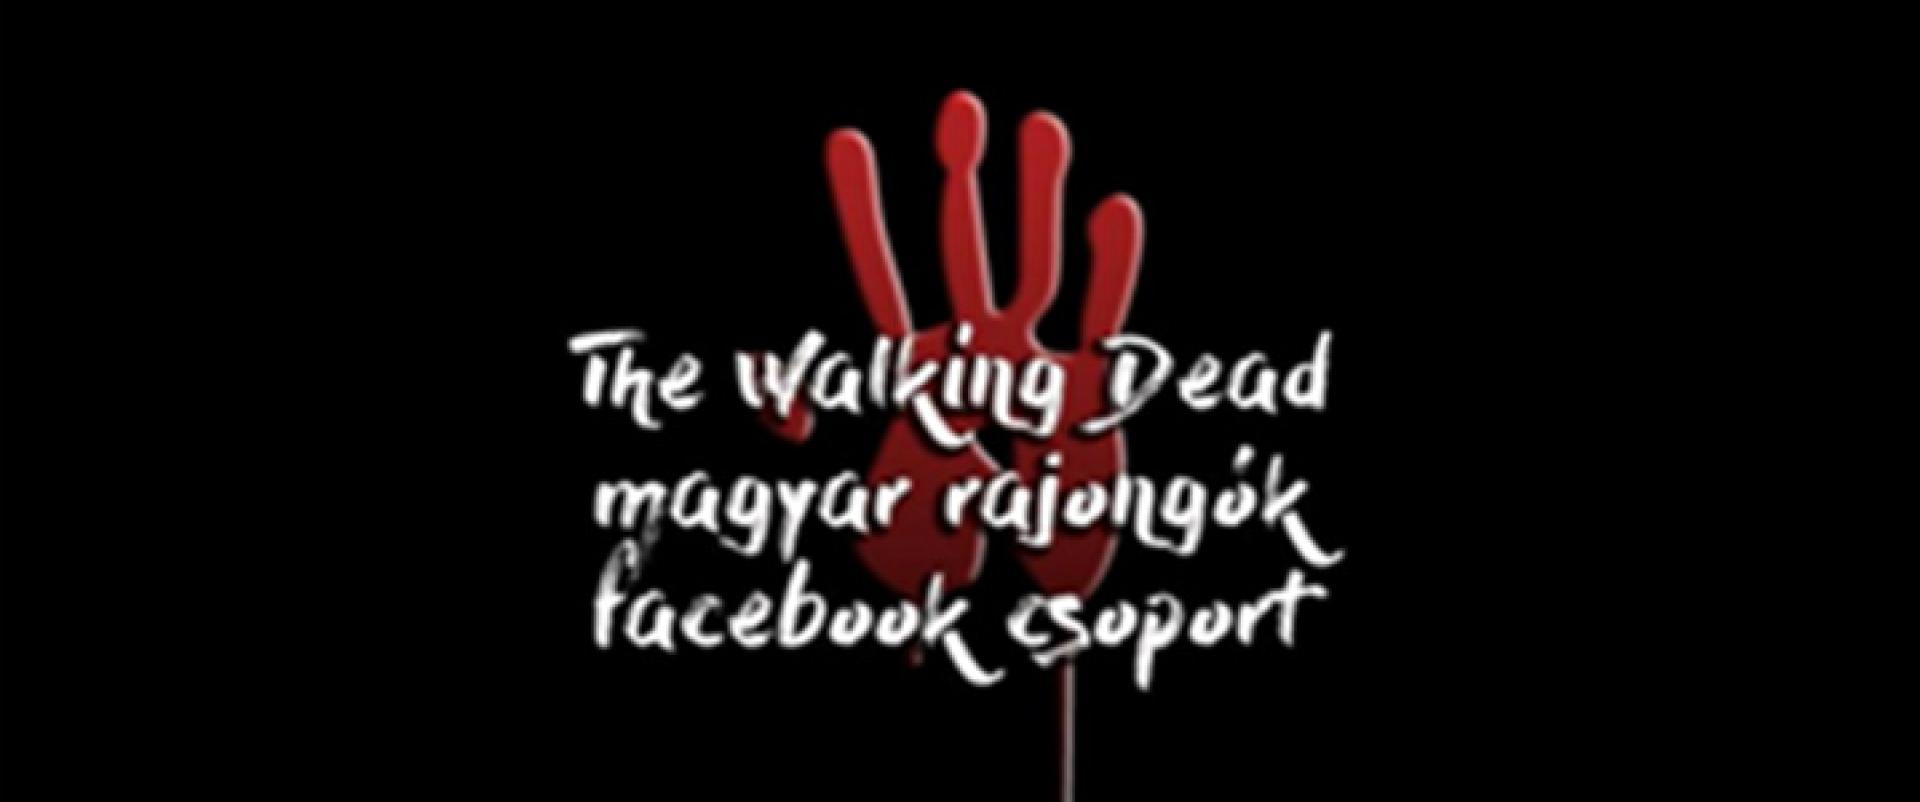 Interjú a The Walking Dead - magyar rajongók Facebook-csoport vezetőjével